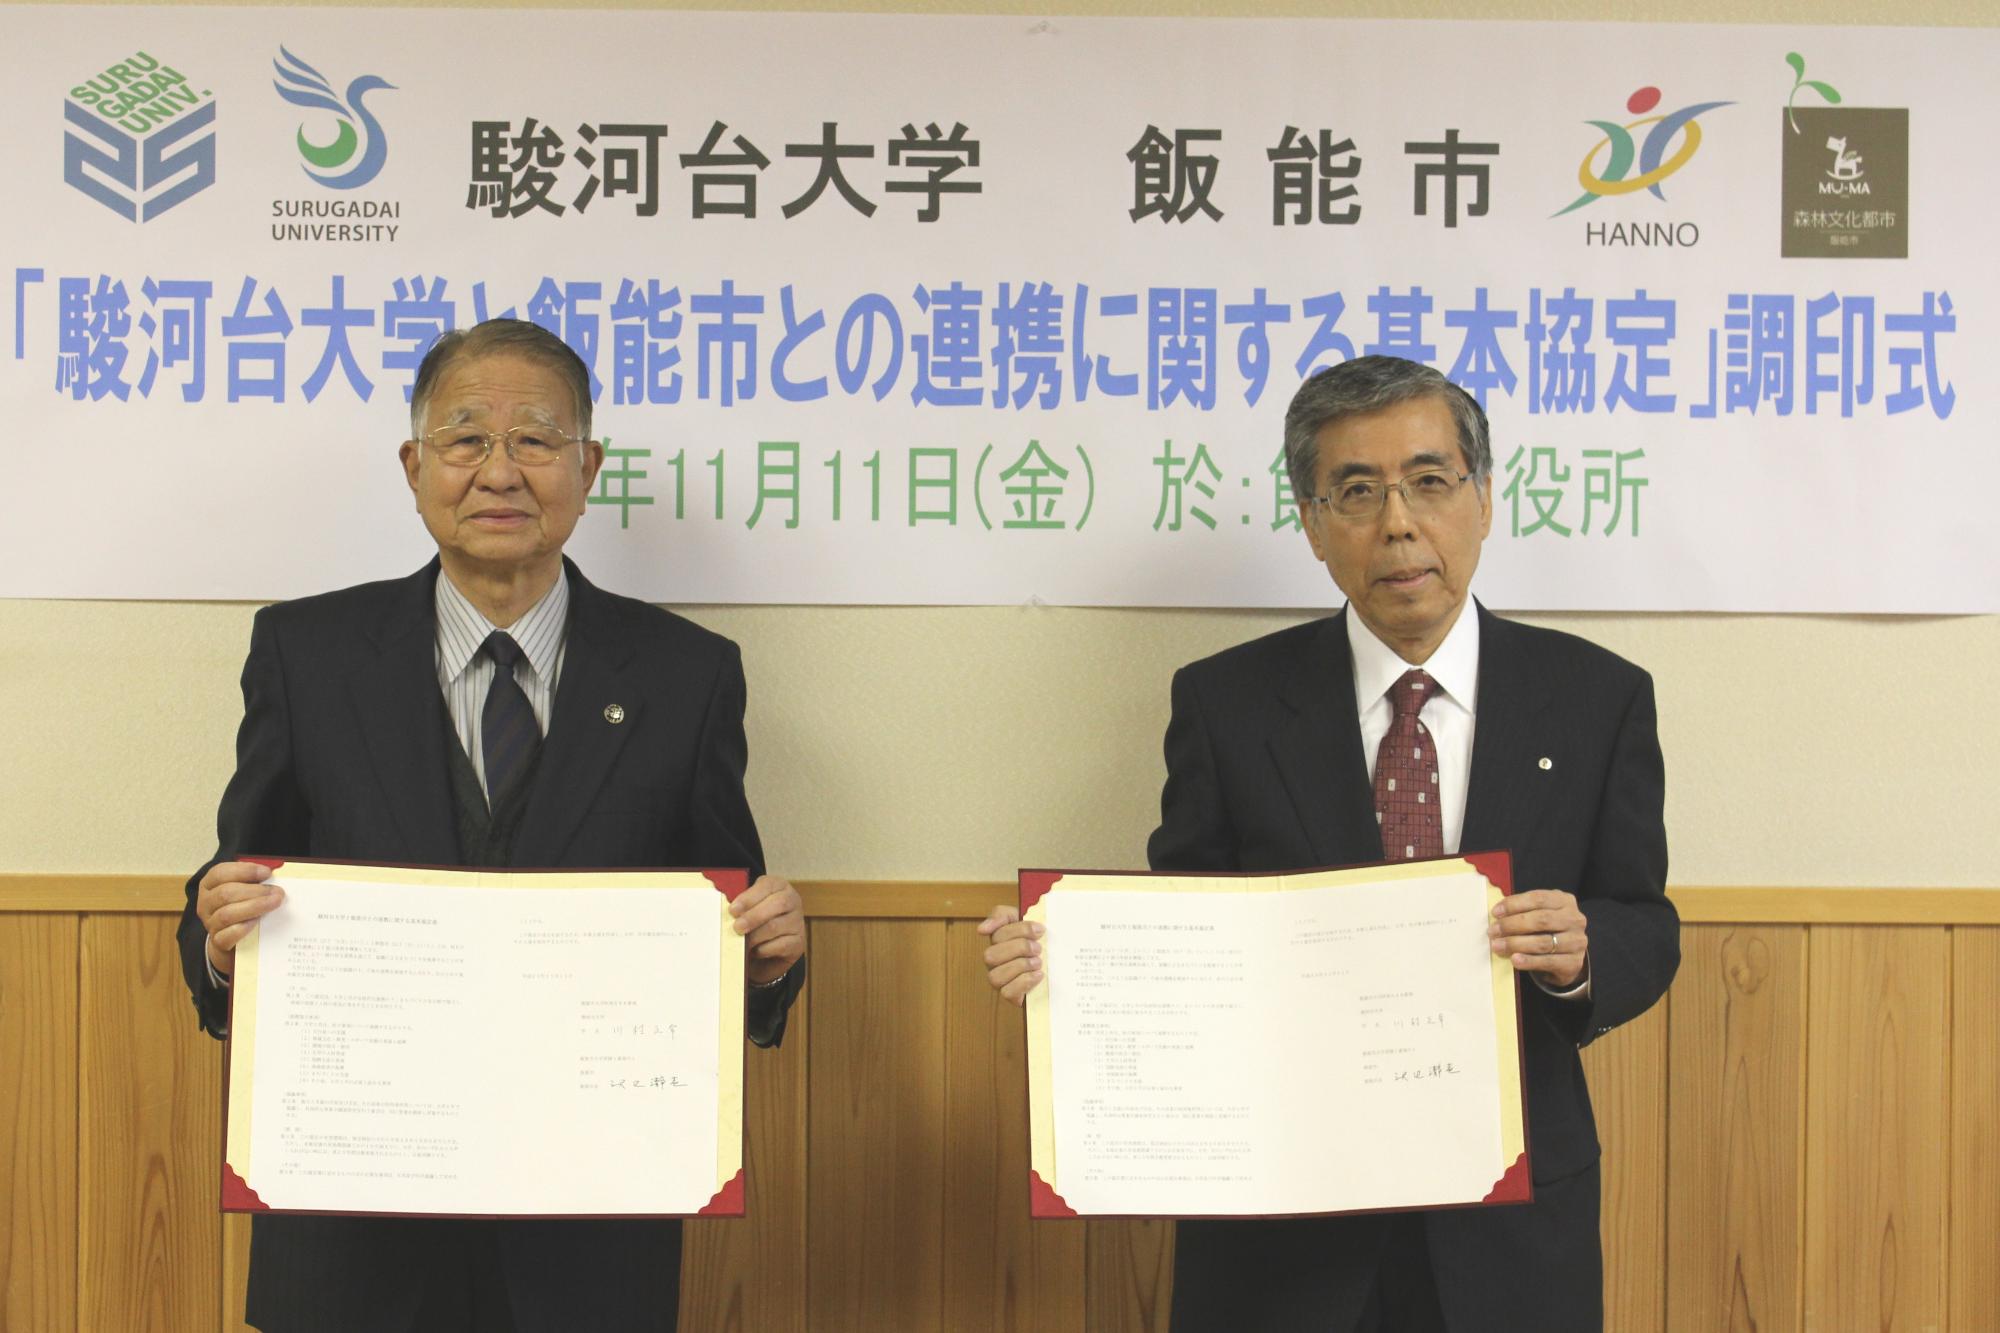 飯能市長と駿河台大学学長が協定書を手に持ち並んで撮影している写真